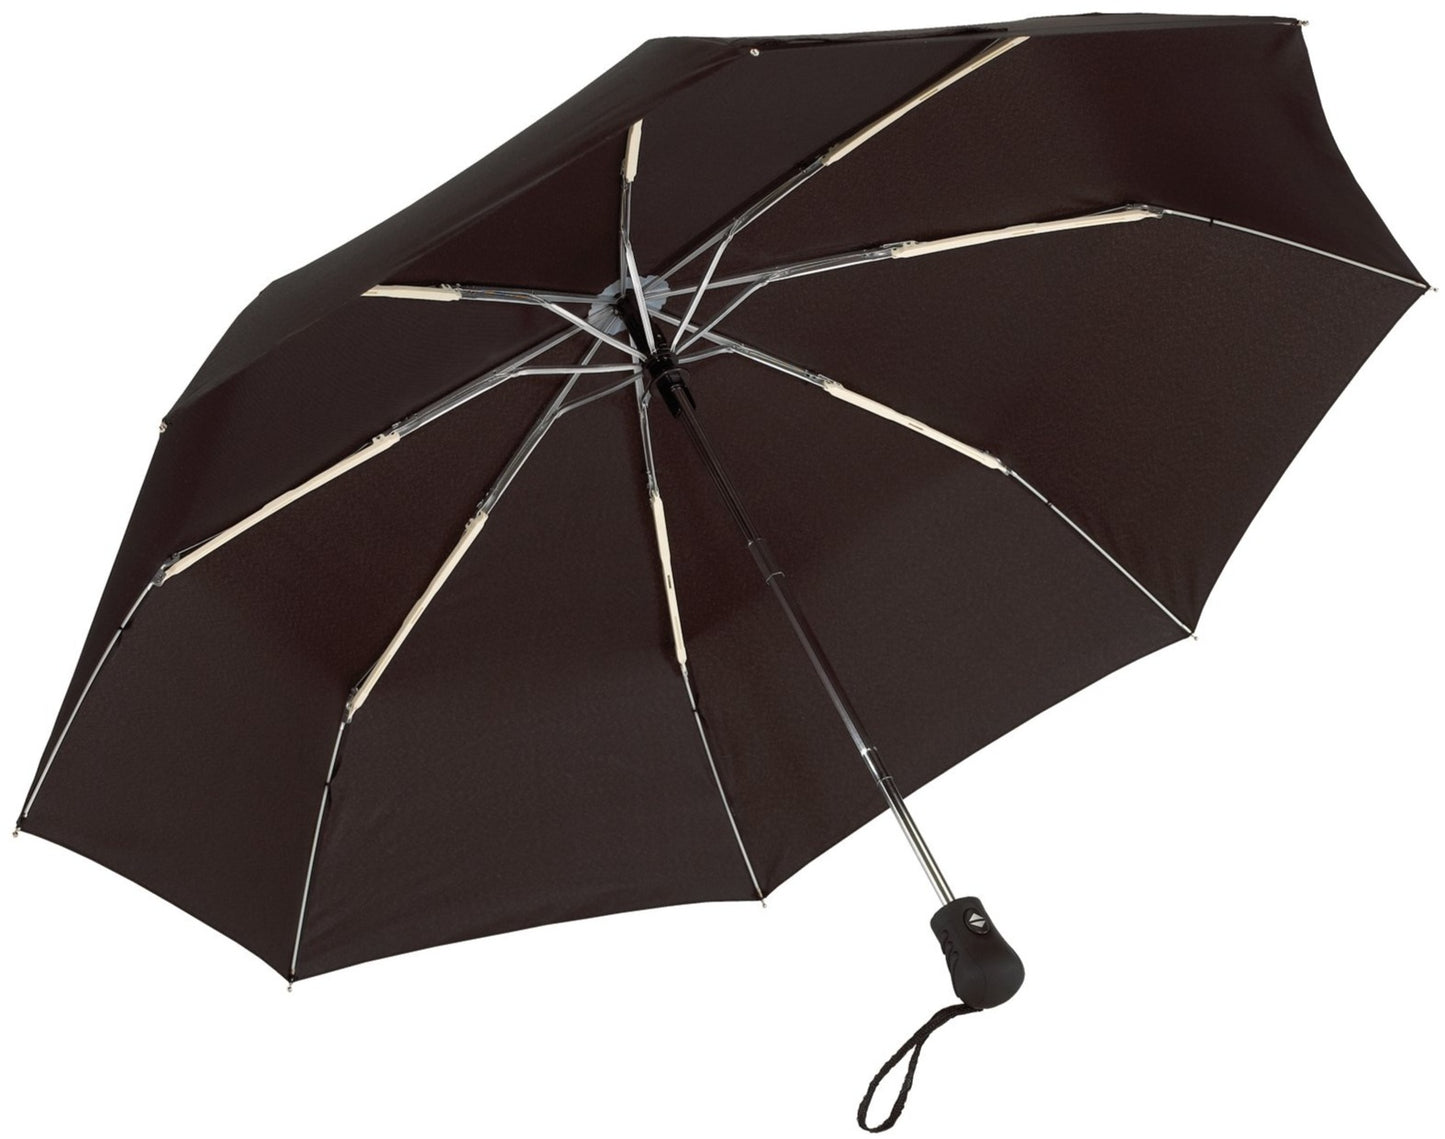 Μαύρη ομπρέλα βροχής, μίνι, αντιανεμική και twinmatic.